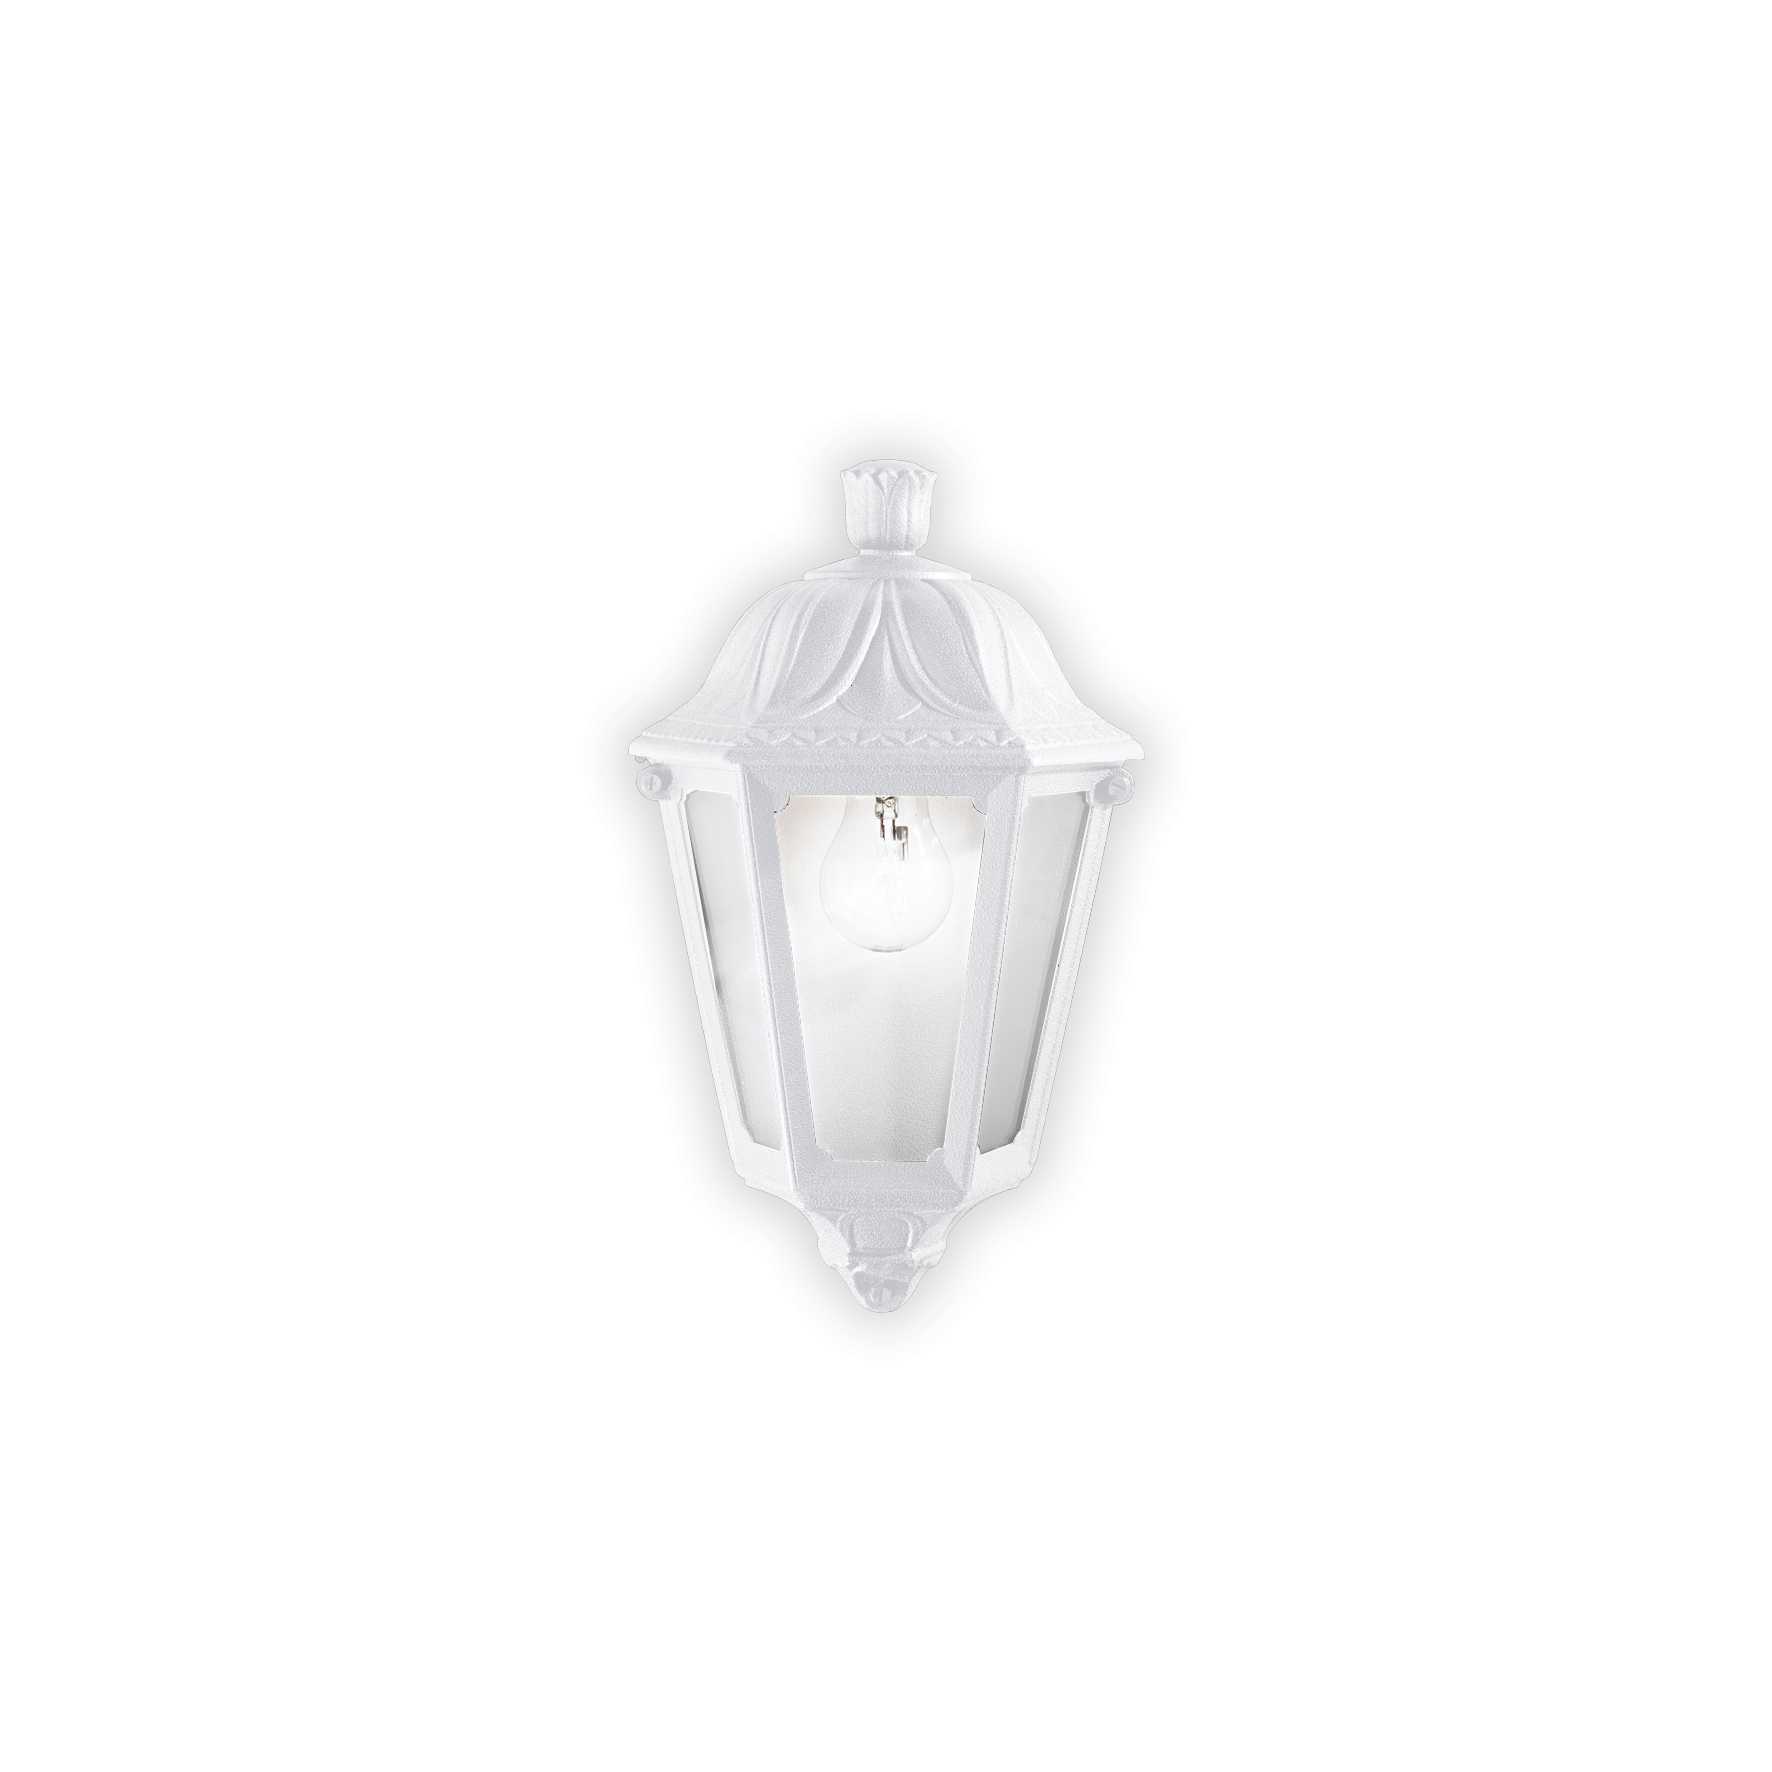 AD hotelska oprema Vanjska zidna lampa Dafne ap1 (mala)- Bijele boje slika proizvoda